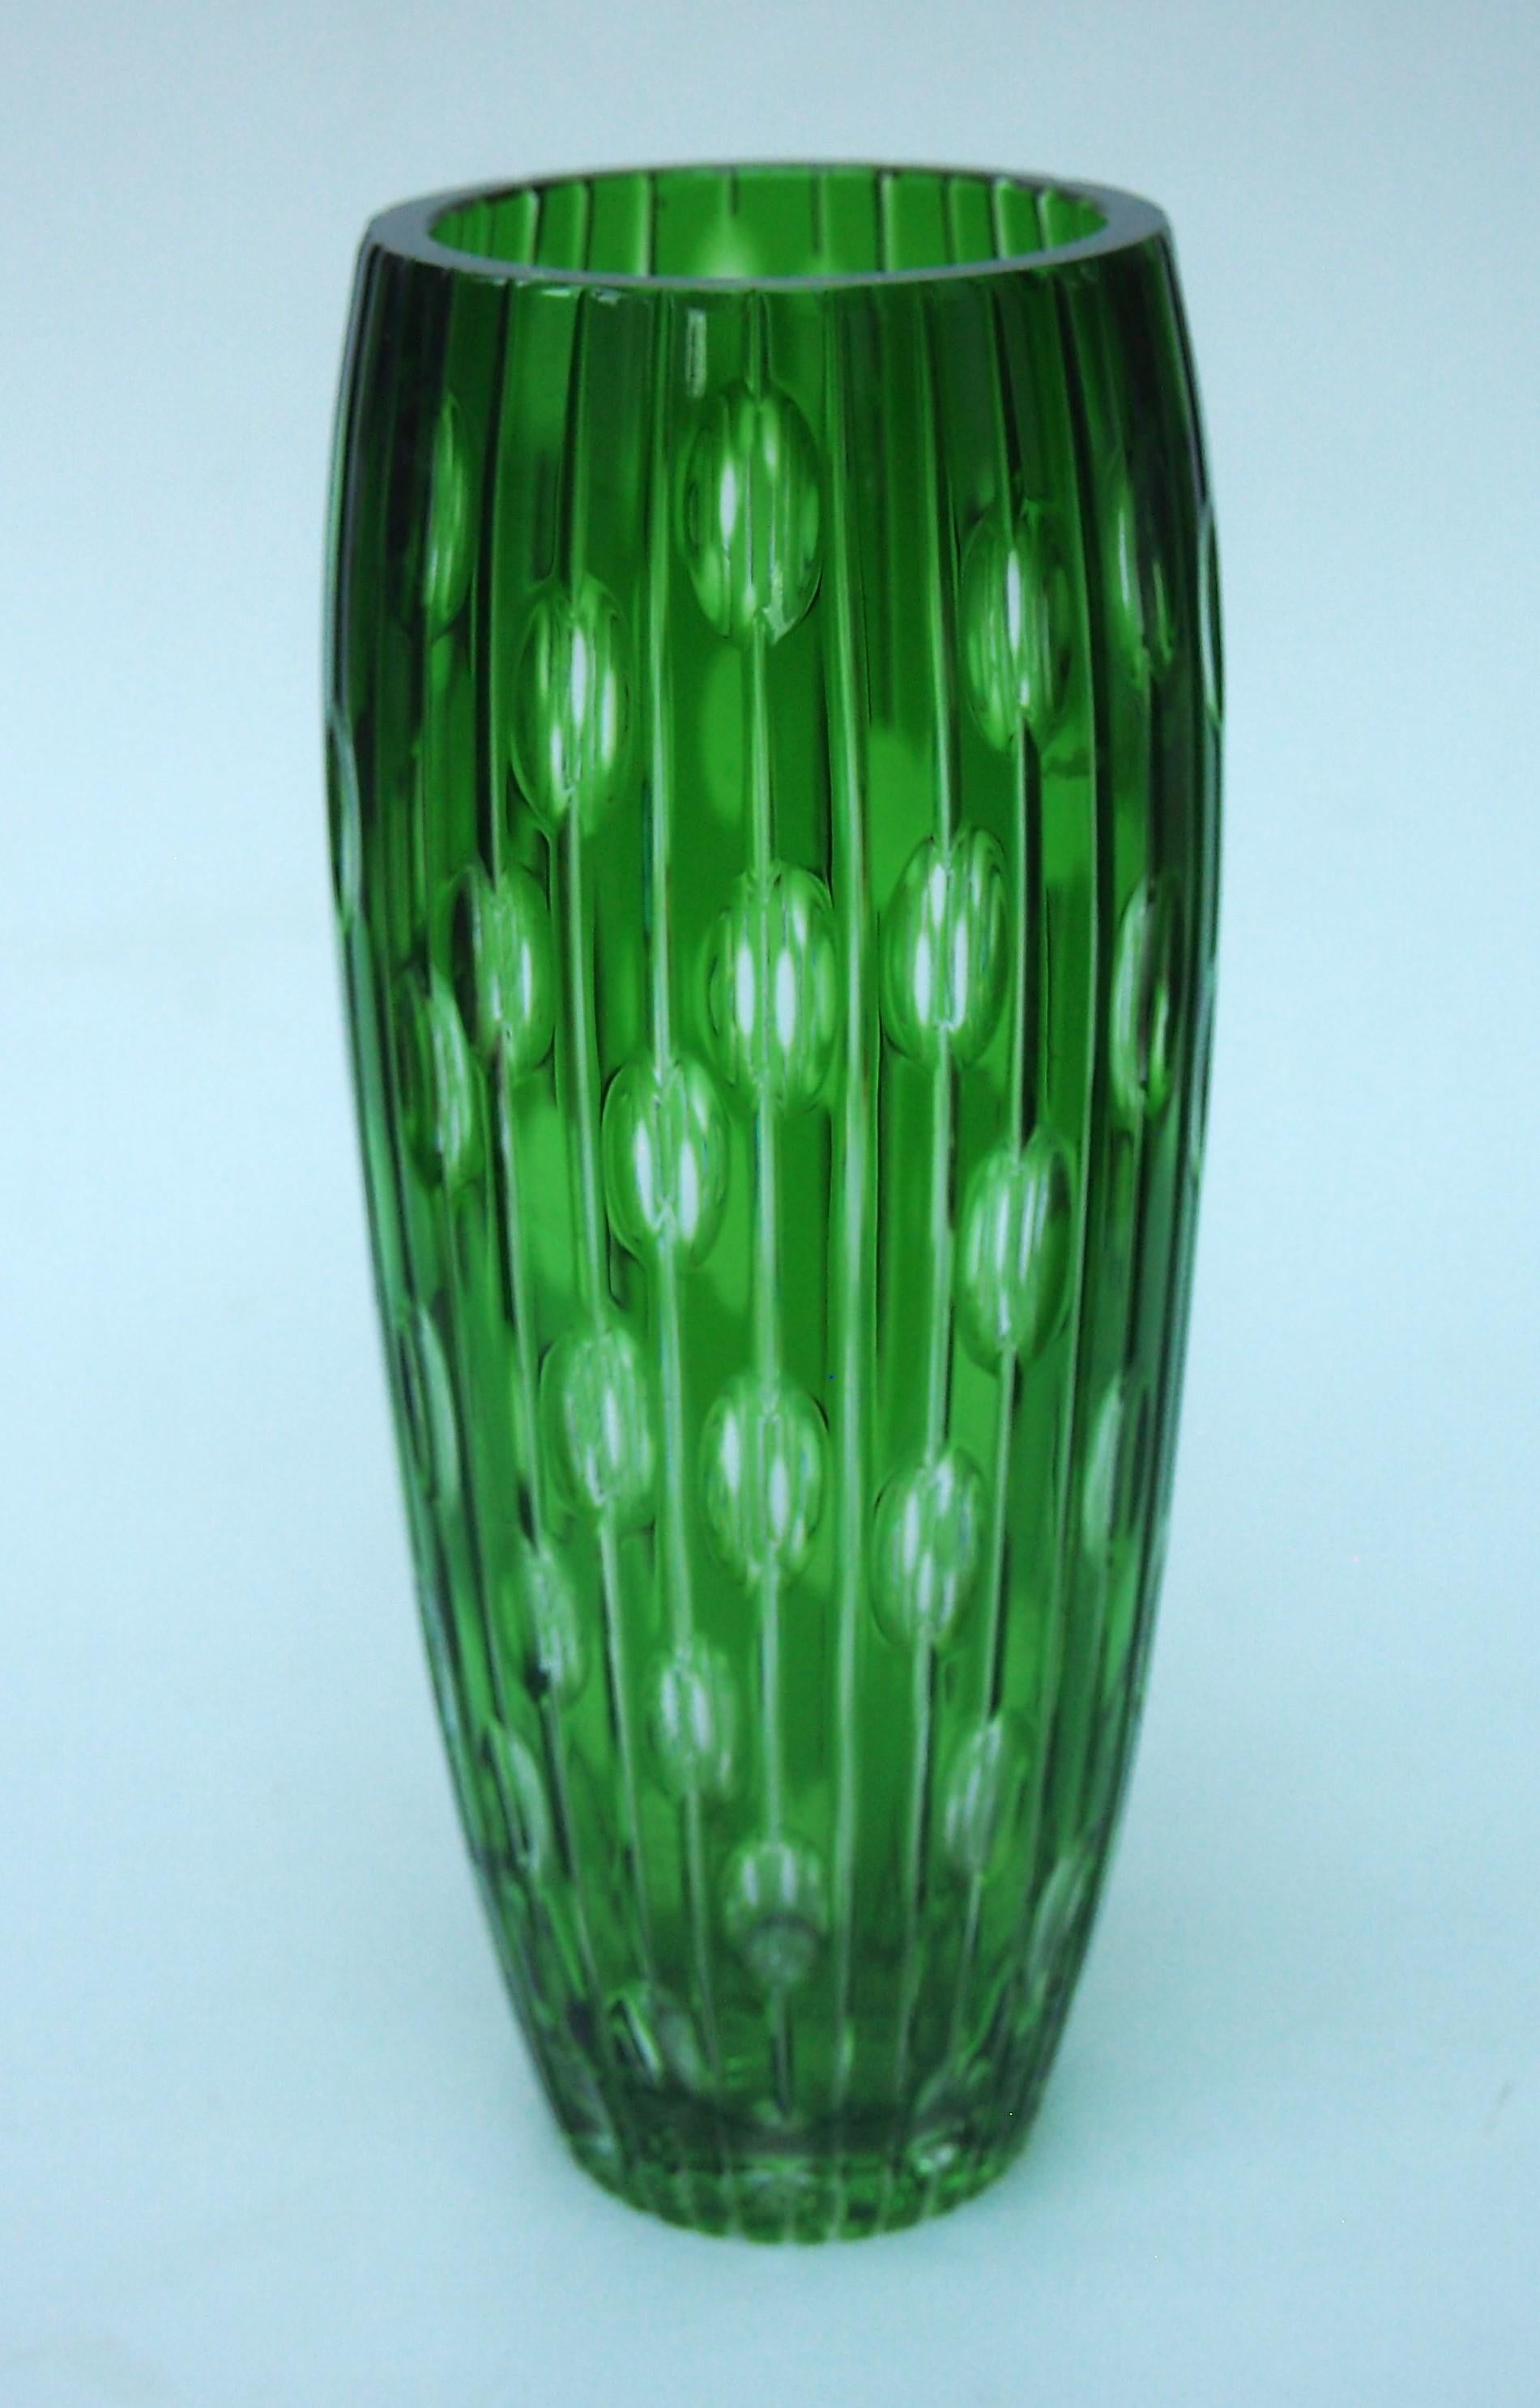 Fabelhafte kristallgrüne, klar geschliffene 1000-Augen-Vase aus der Haida-Region in der Tschechoslowakei - möglicherweise von Carl Metzler oder Carl Hosch. 1000-Augen-Vasen werden so genannt, weil man beim Blick in jede der Dutzenden von